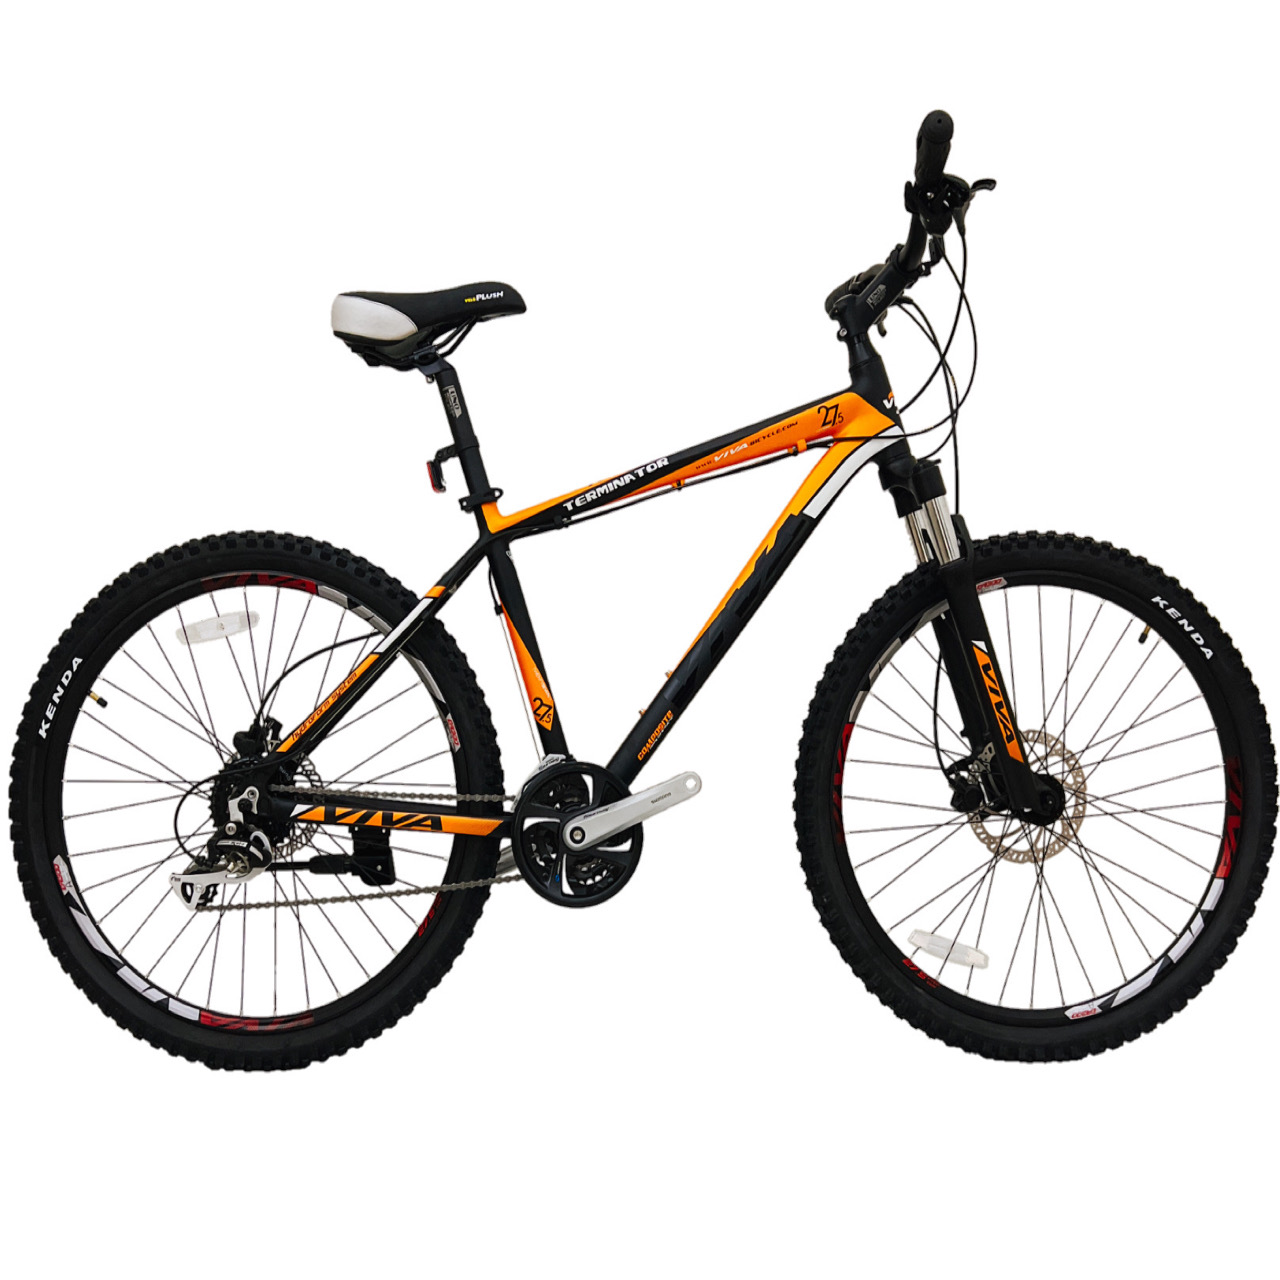 نکته خرید - قیمت روز دوچرخه کوهستان ویوا مدل TERMINATOR کد هیدرولیک سایز 27.5 خرید